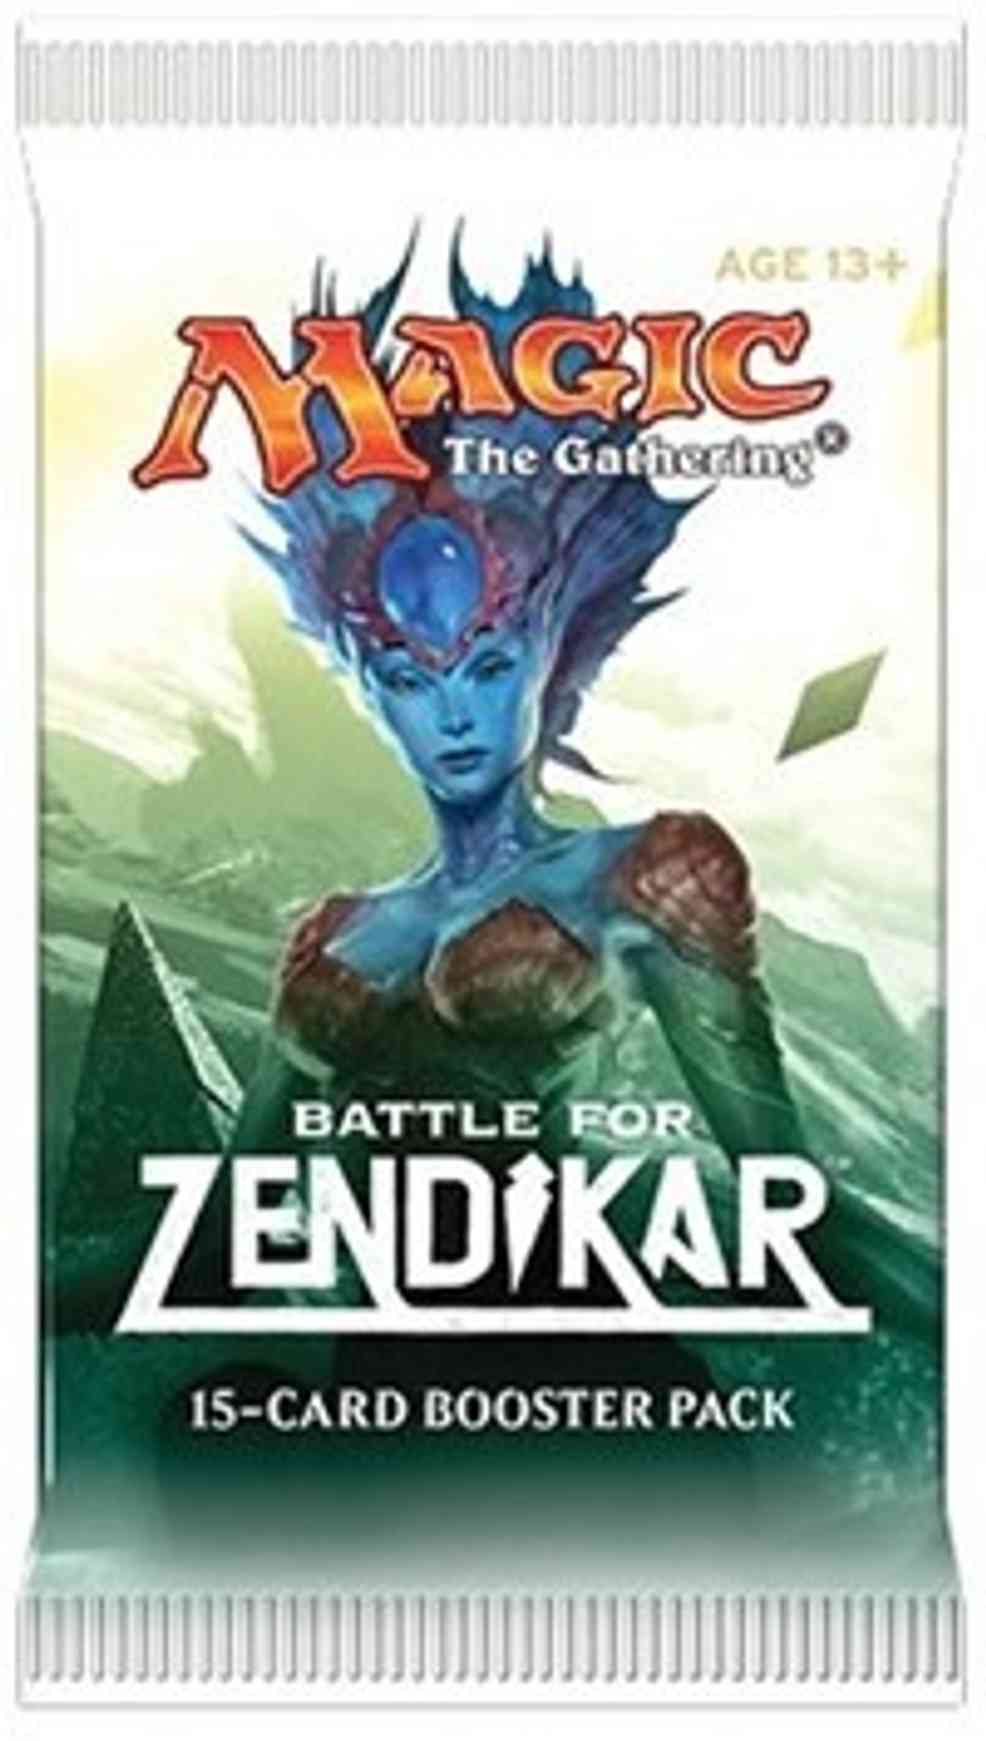 Battle for Zendikar - Booster Pack magic card front